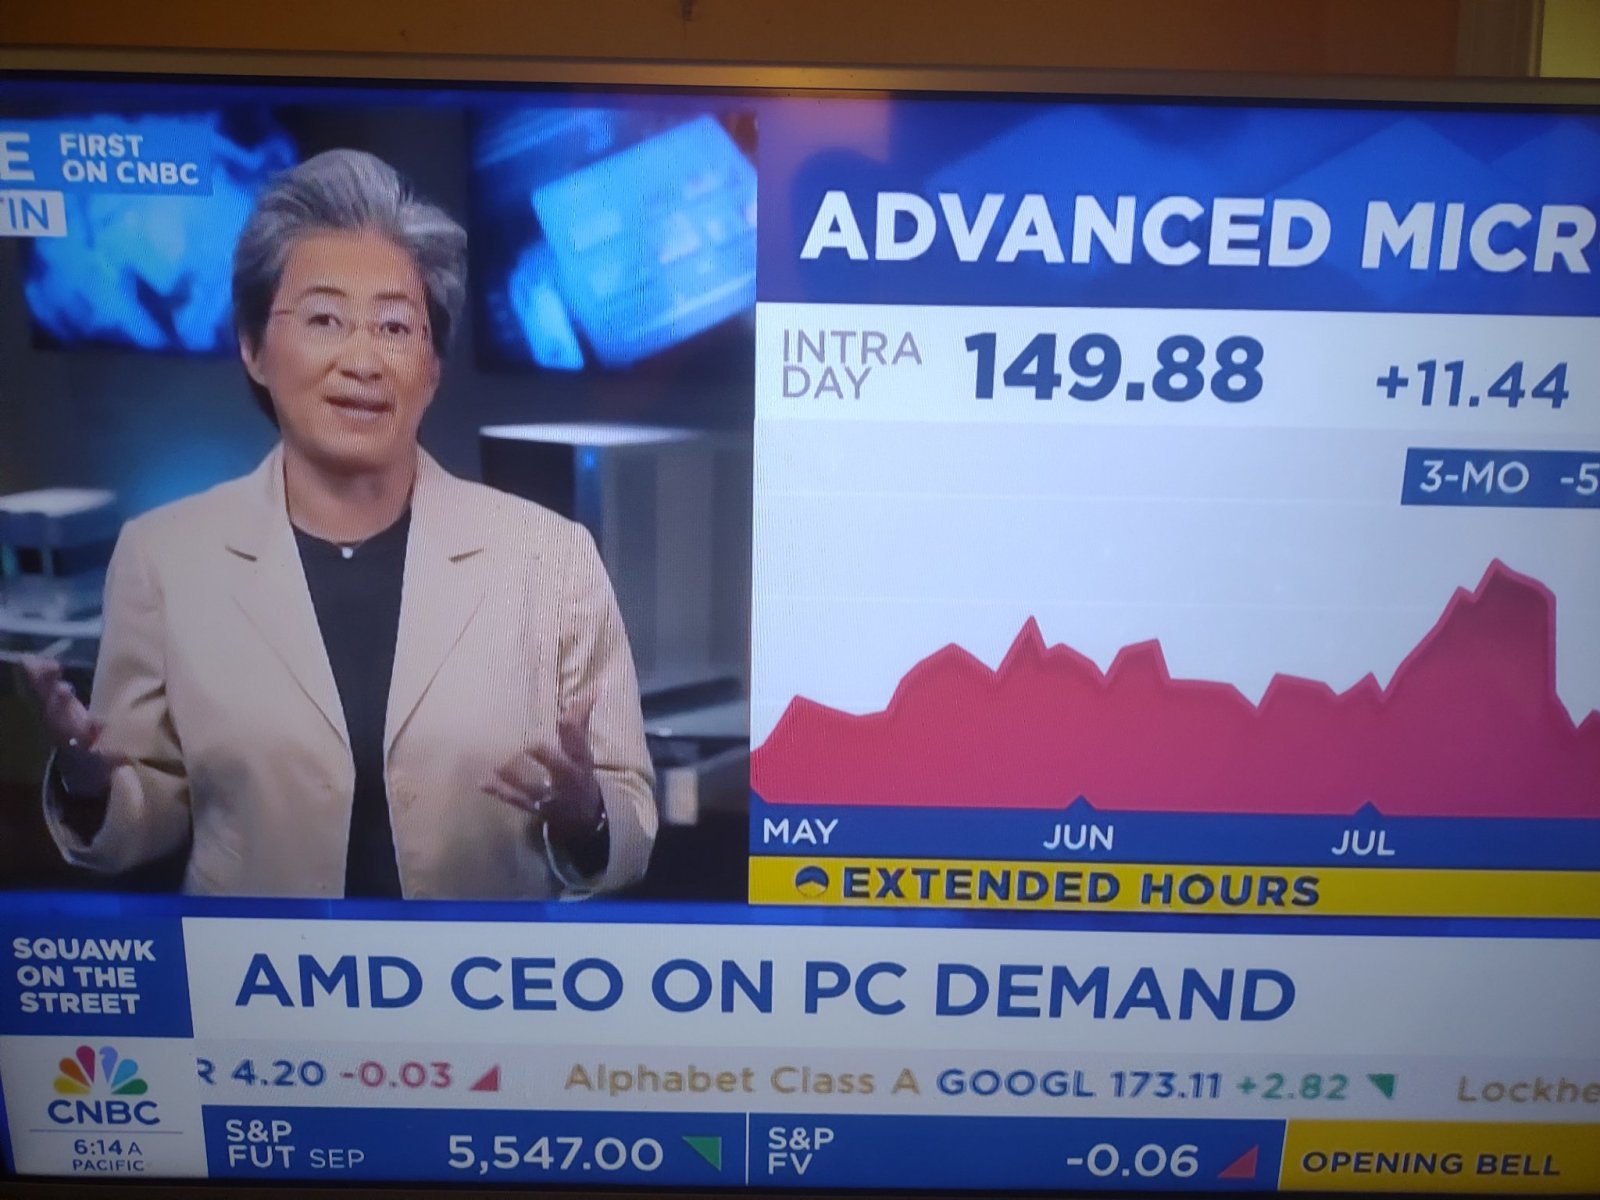 $アドバンスト マイクロ デバイシズ (AMD.US)$ Lisa Suは現在CNBCでライブ配信中です